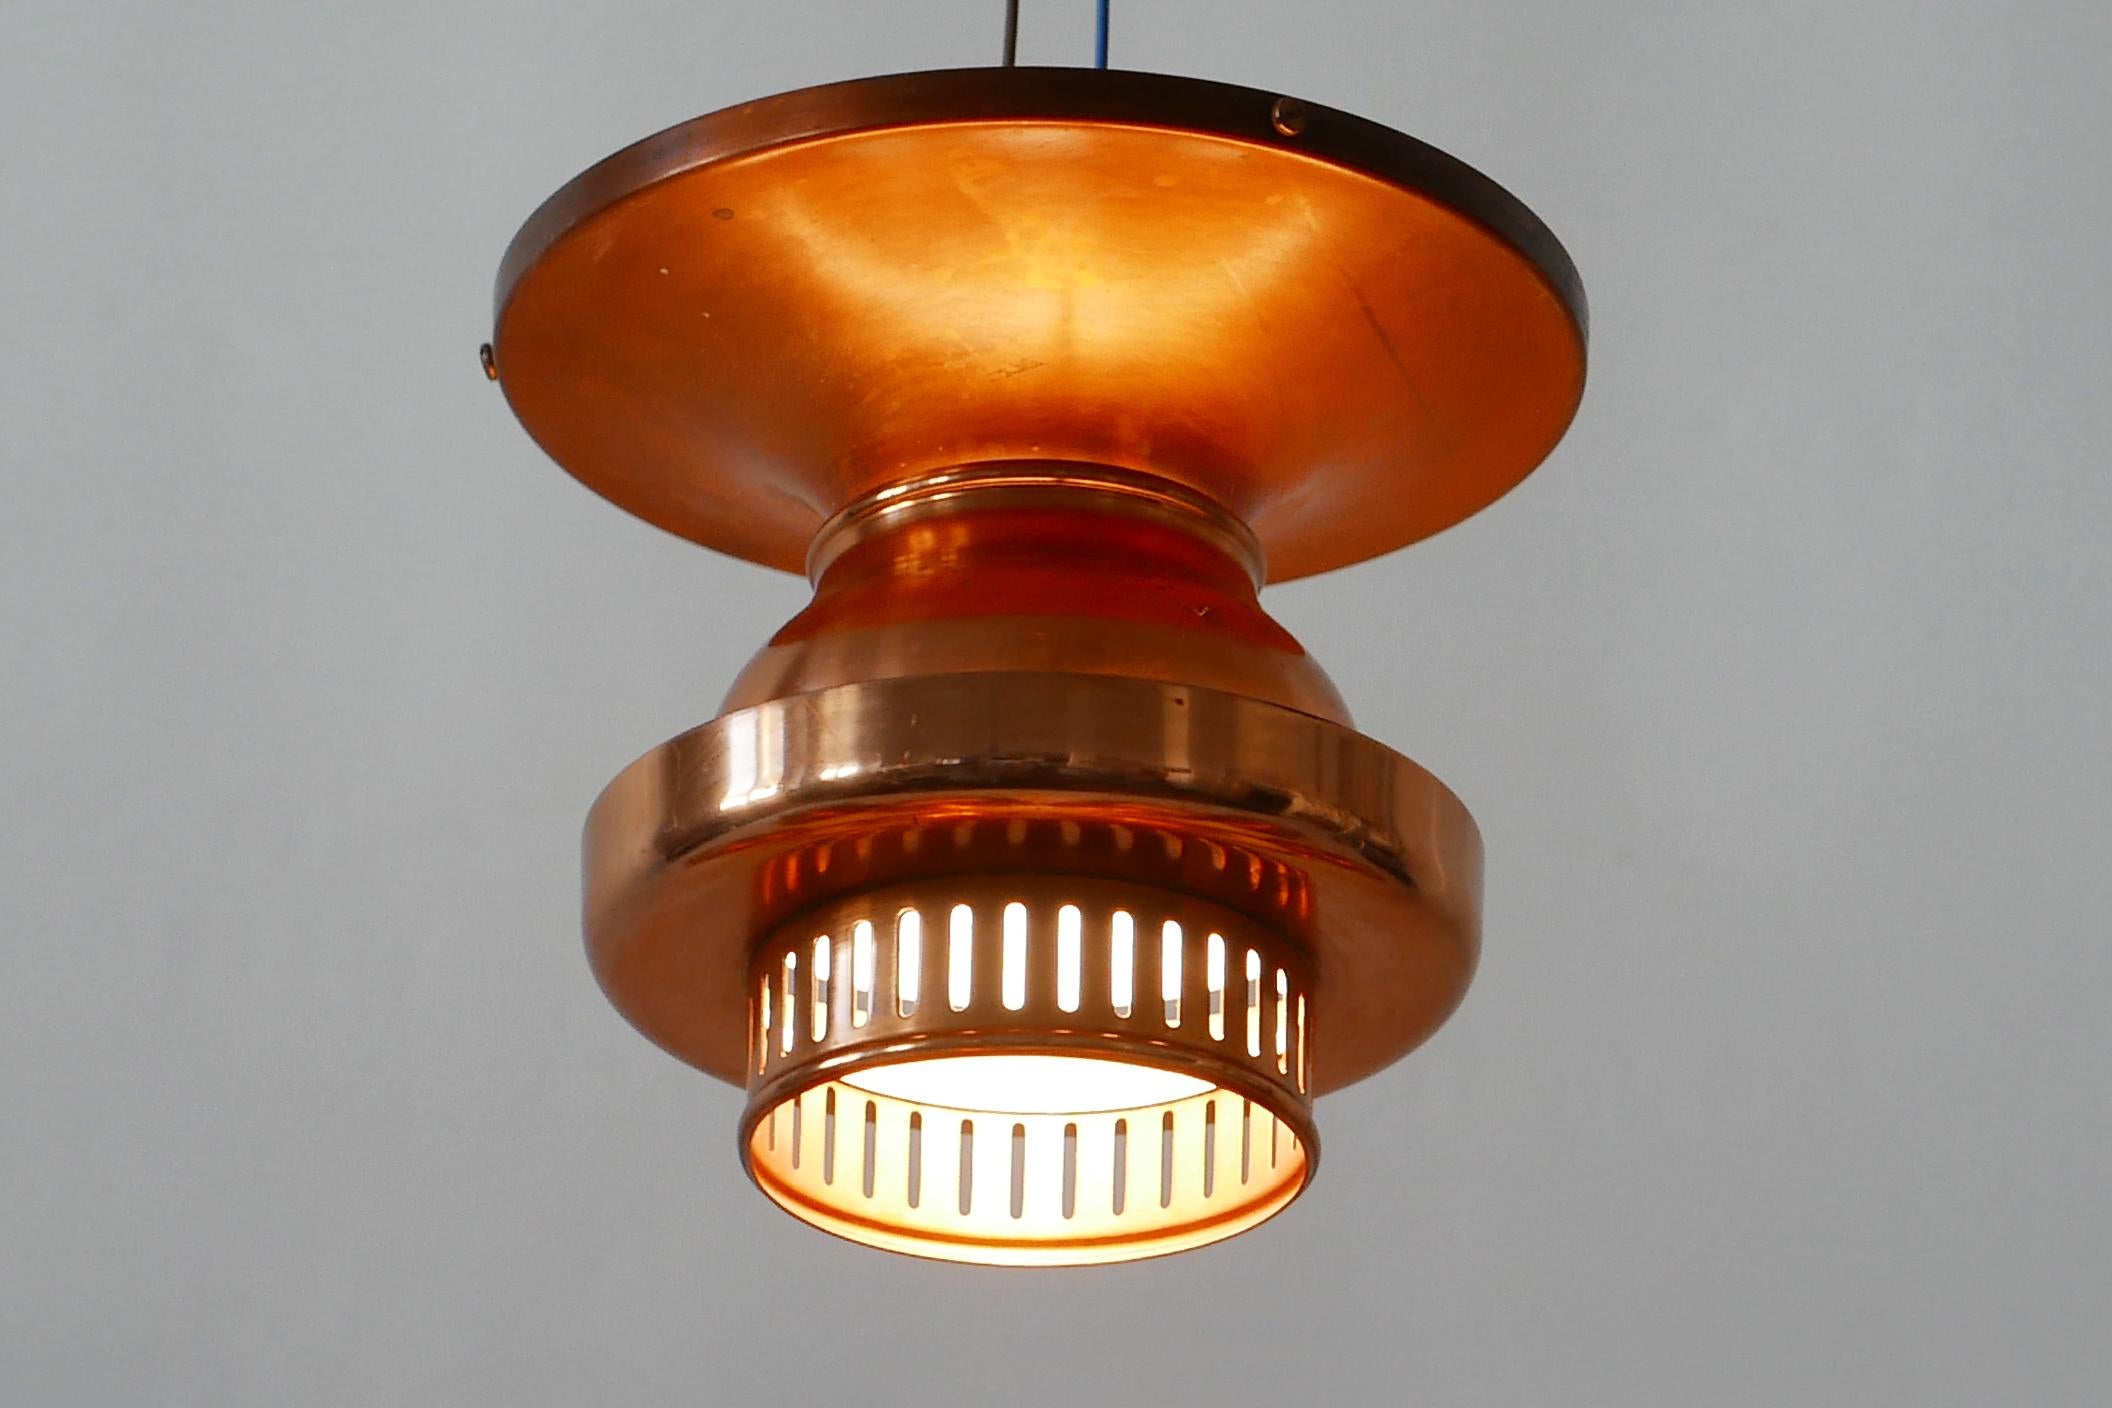 Elegant Mid-Century Modern Copper Ceiling Lamps or Flush Mounts, 1960s, Denmark For Sale 3